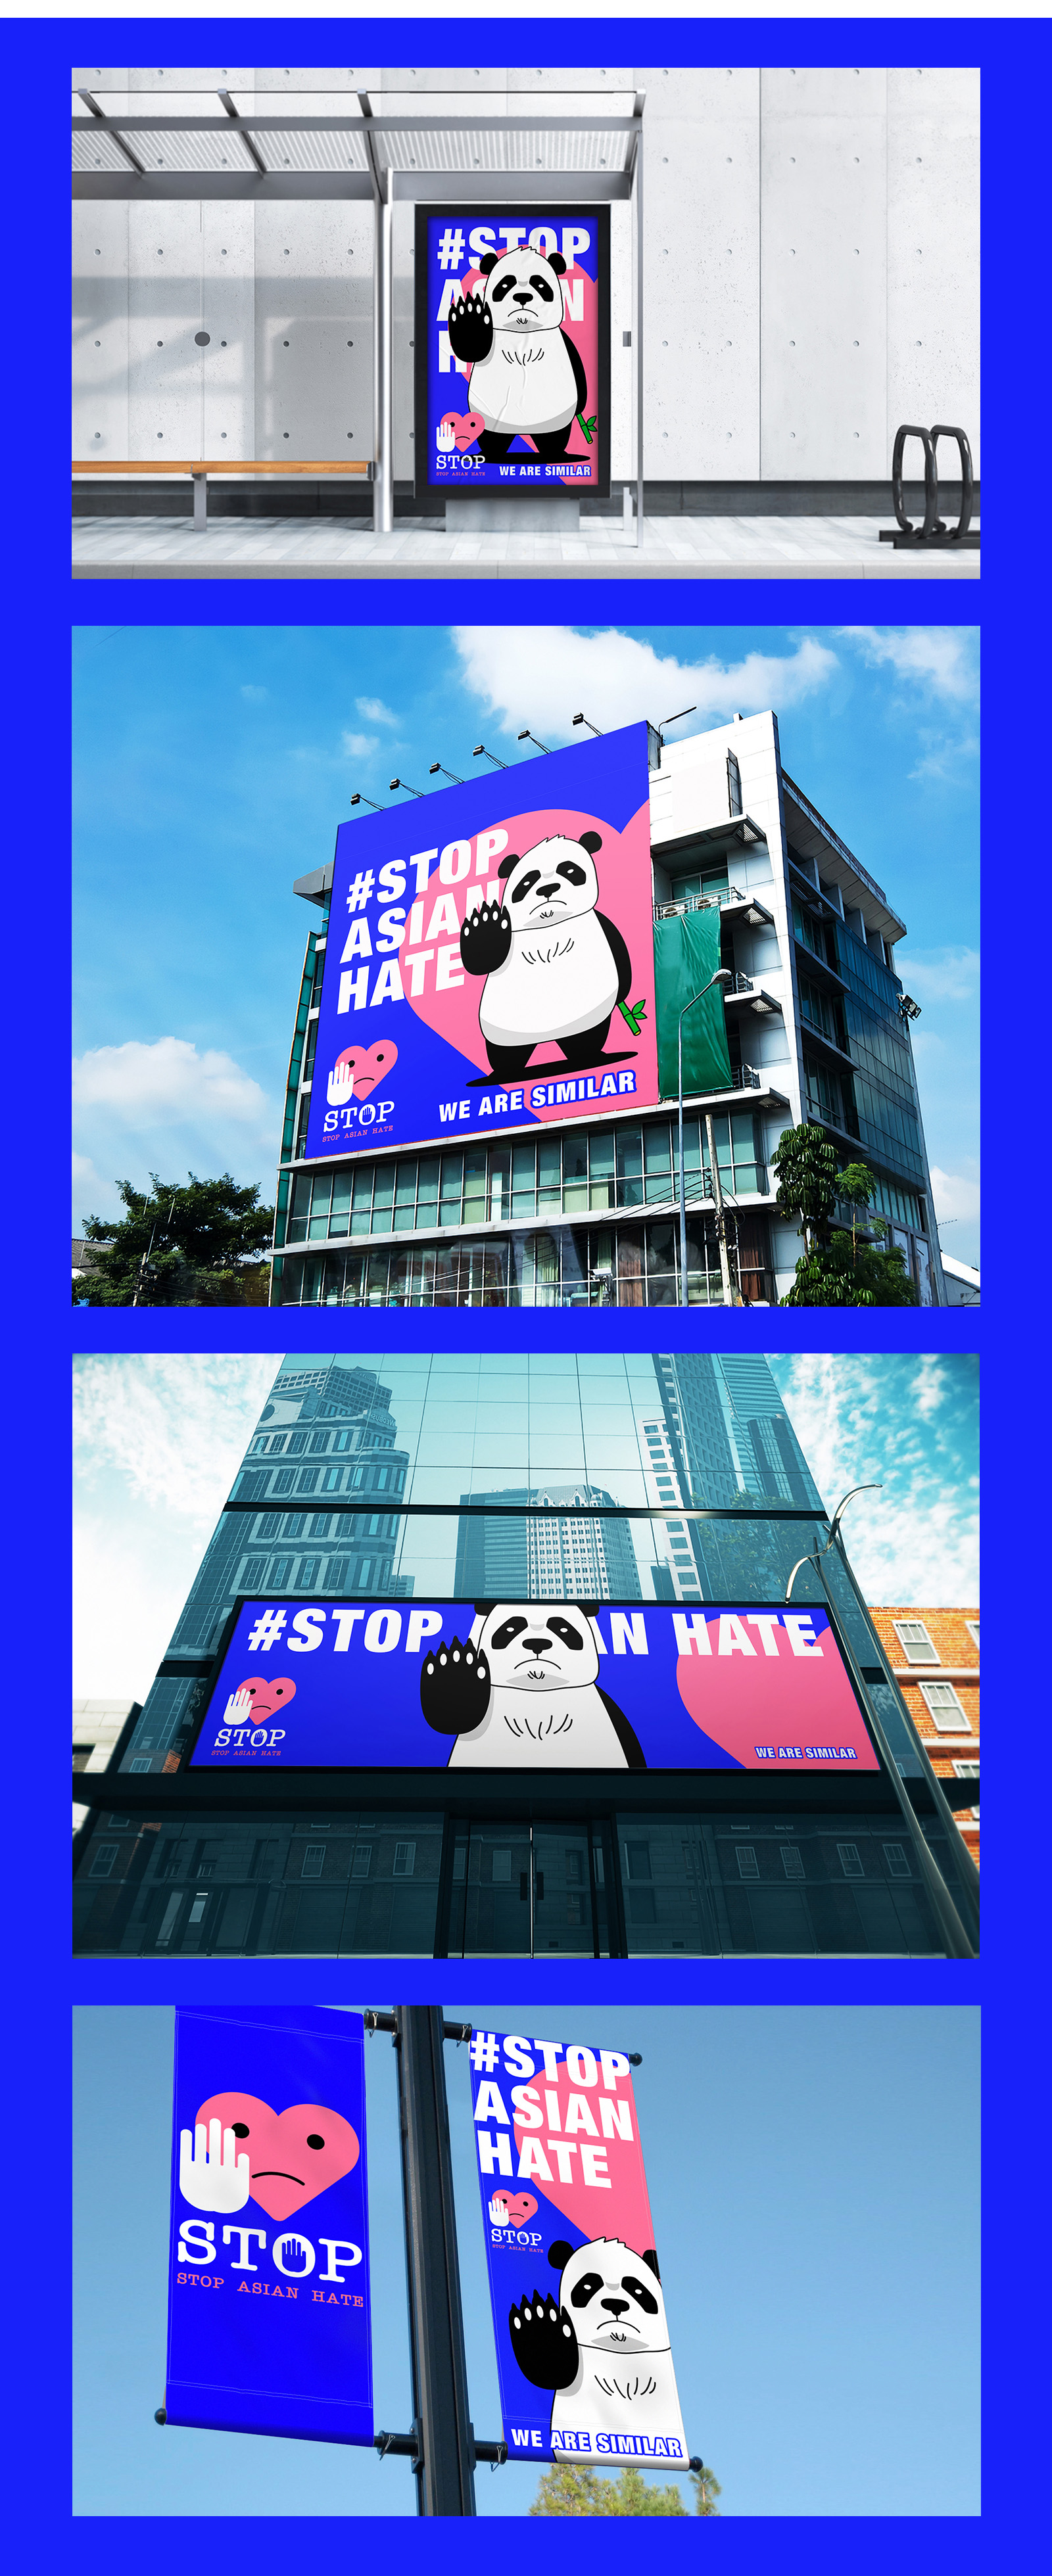 公益品牌运动 / STOP ASIAN HATE停止亚洲仇恨